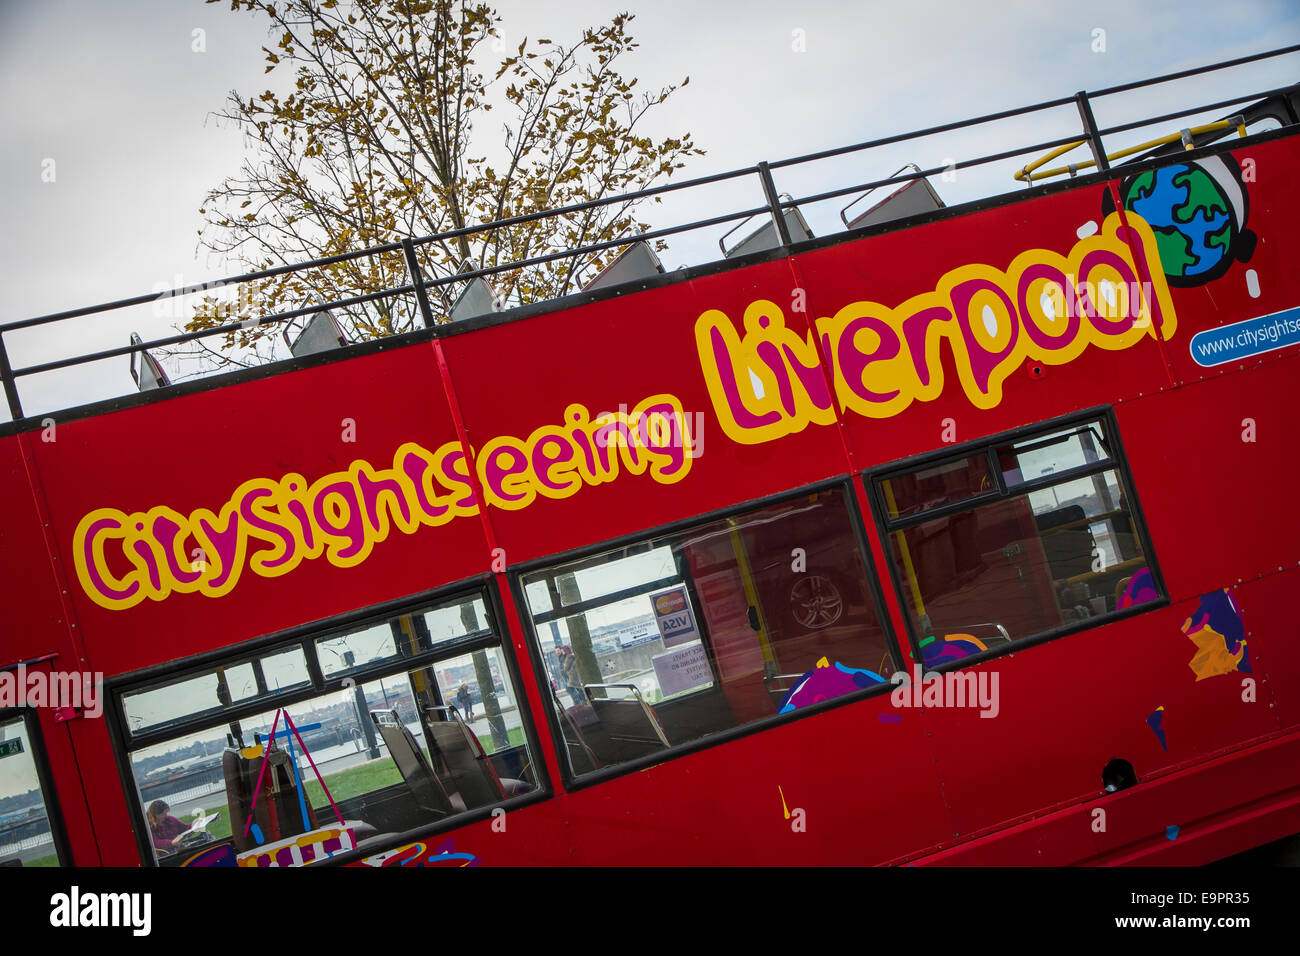 Eine offene Top-Sightseeing-Bus in Liverpool Stockfoto